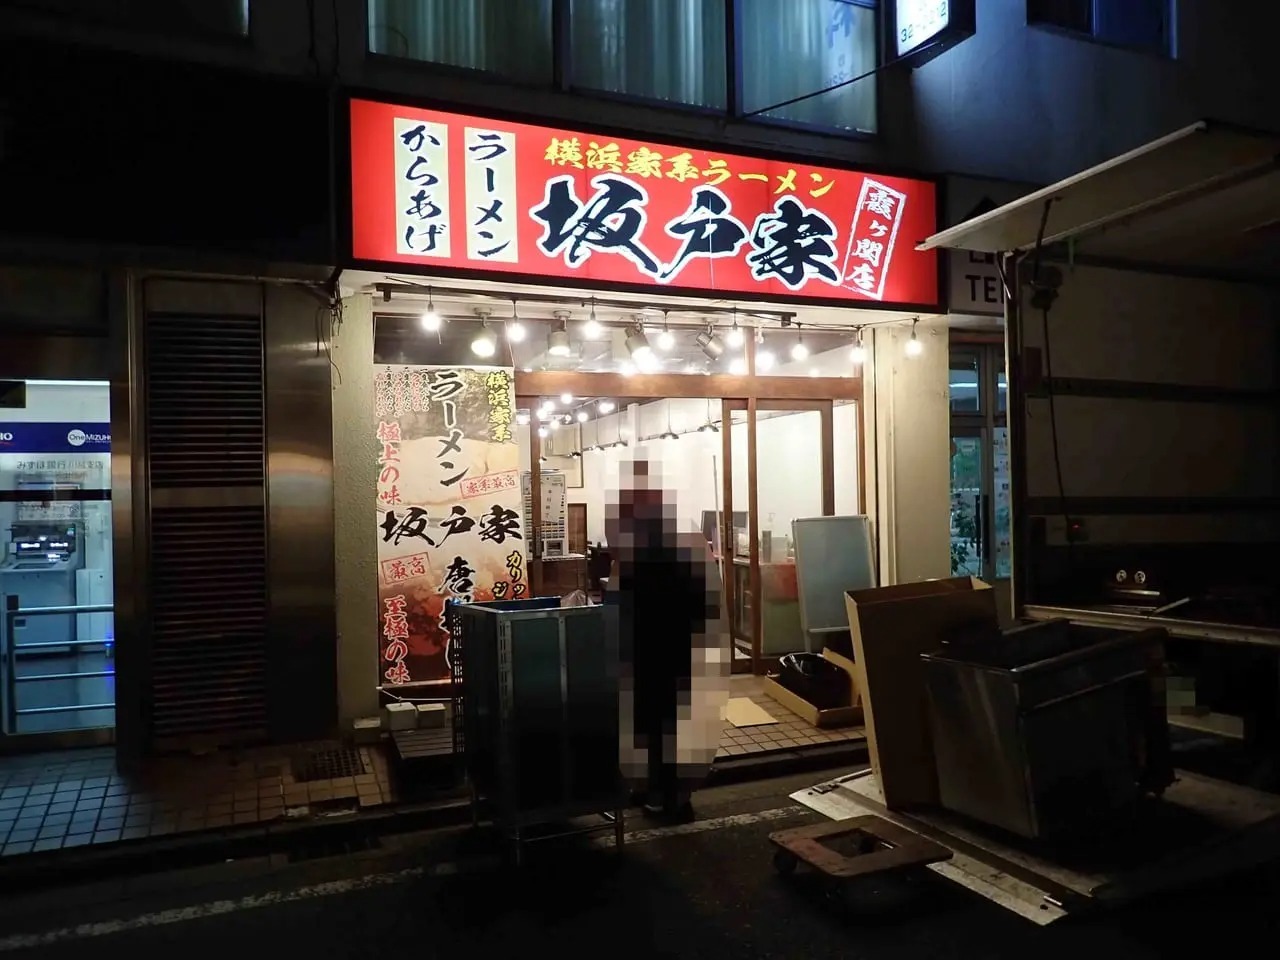 こちらは以前、同じ横浜家系ラーメンのお店「横浜家系ラーメン 濃厚家」が営業していた場所で、いわゆる「居抜き」というかたちになります